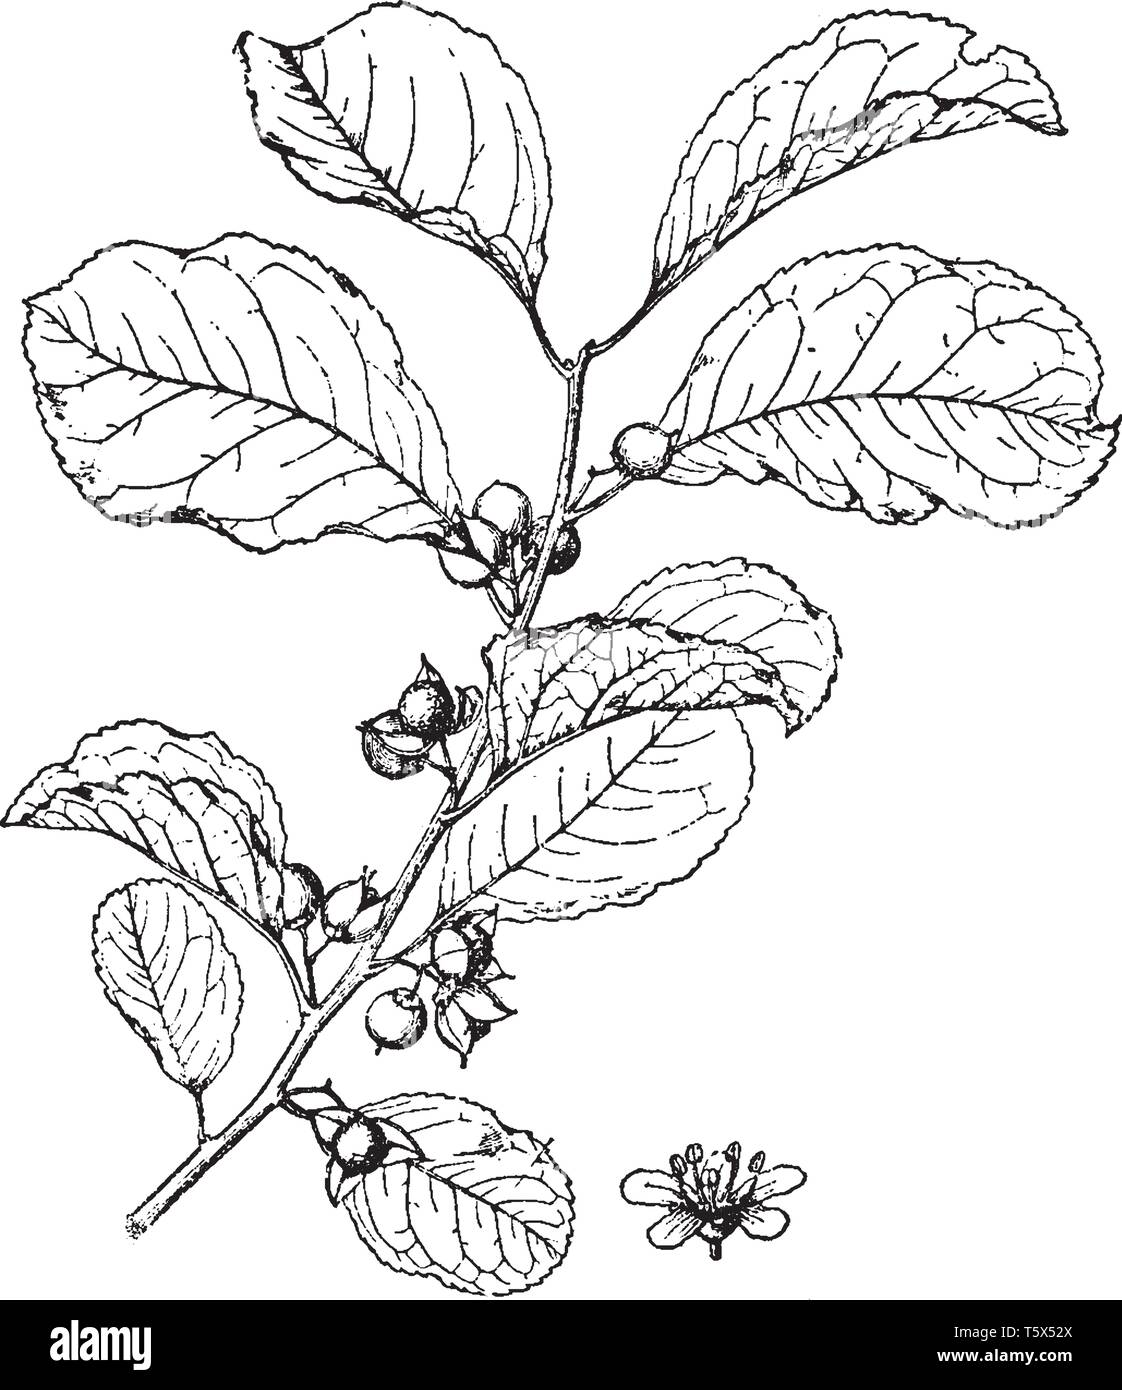 Celastrus orbiculatus ist eine mehrjährige Laub, Klettern und waldige Pflanze, vintage Strichzeichnung oder Gravur Abbildung. Stock Vektor